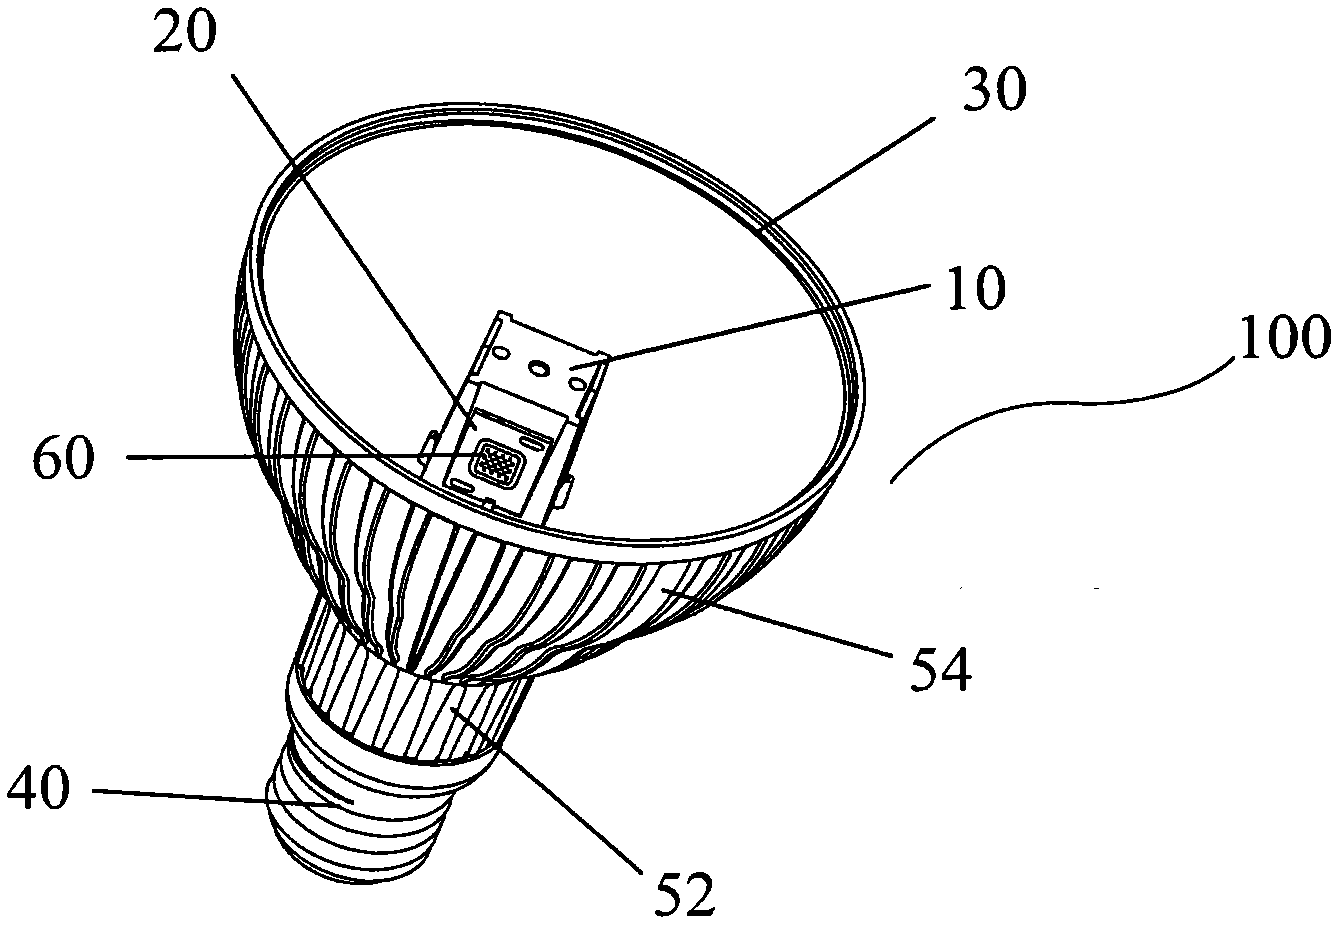 LED (light emitting diode) reflecting lamp